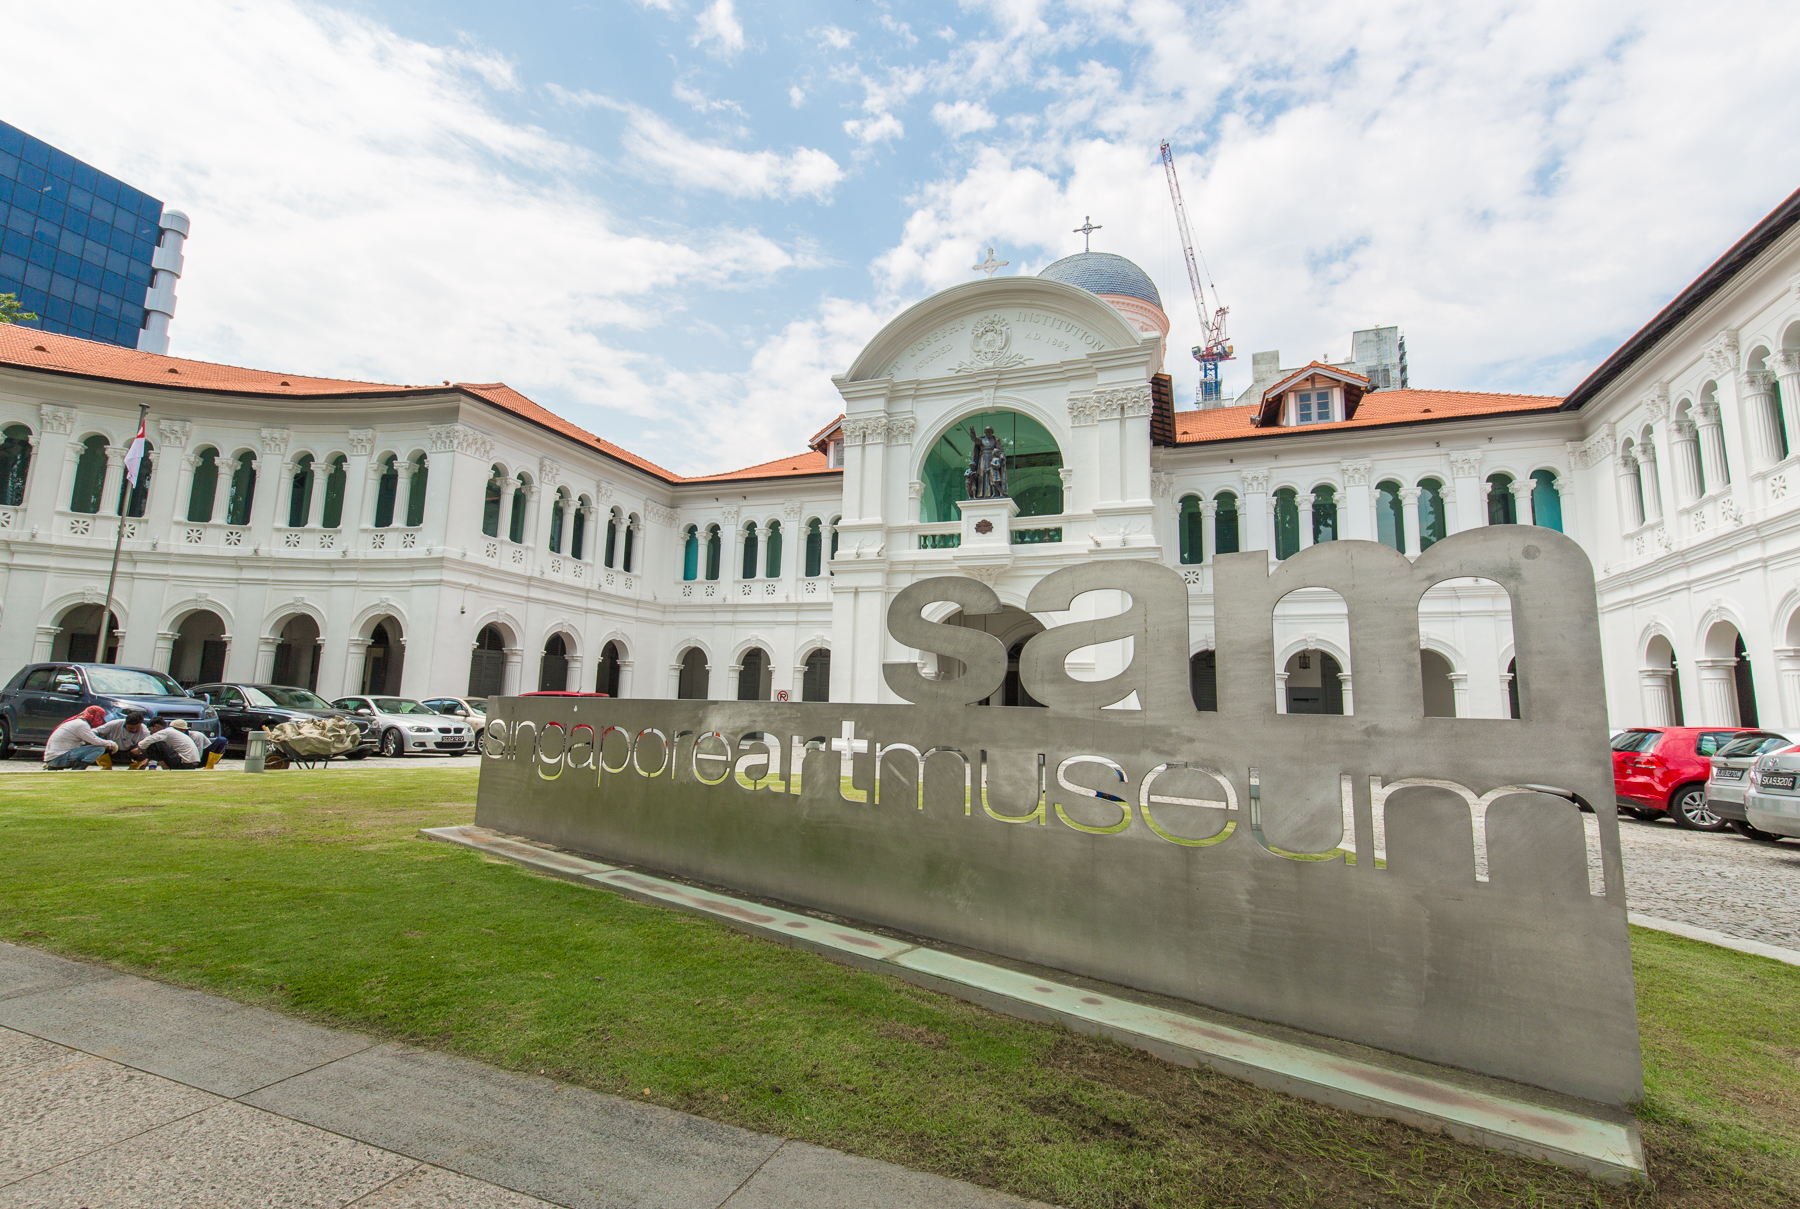 Top 5 cultural spots around Singapore Management University